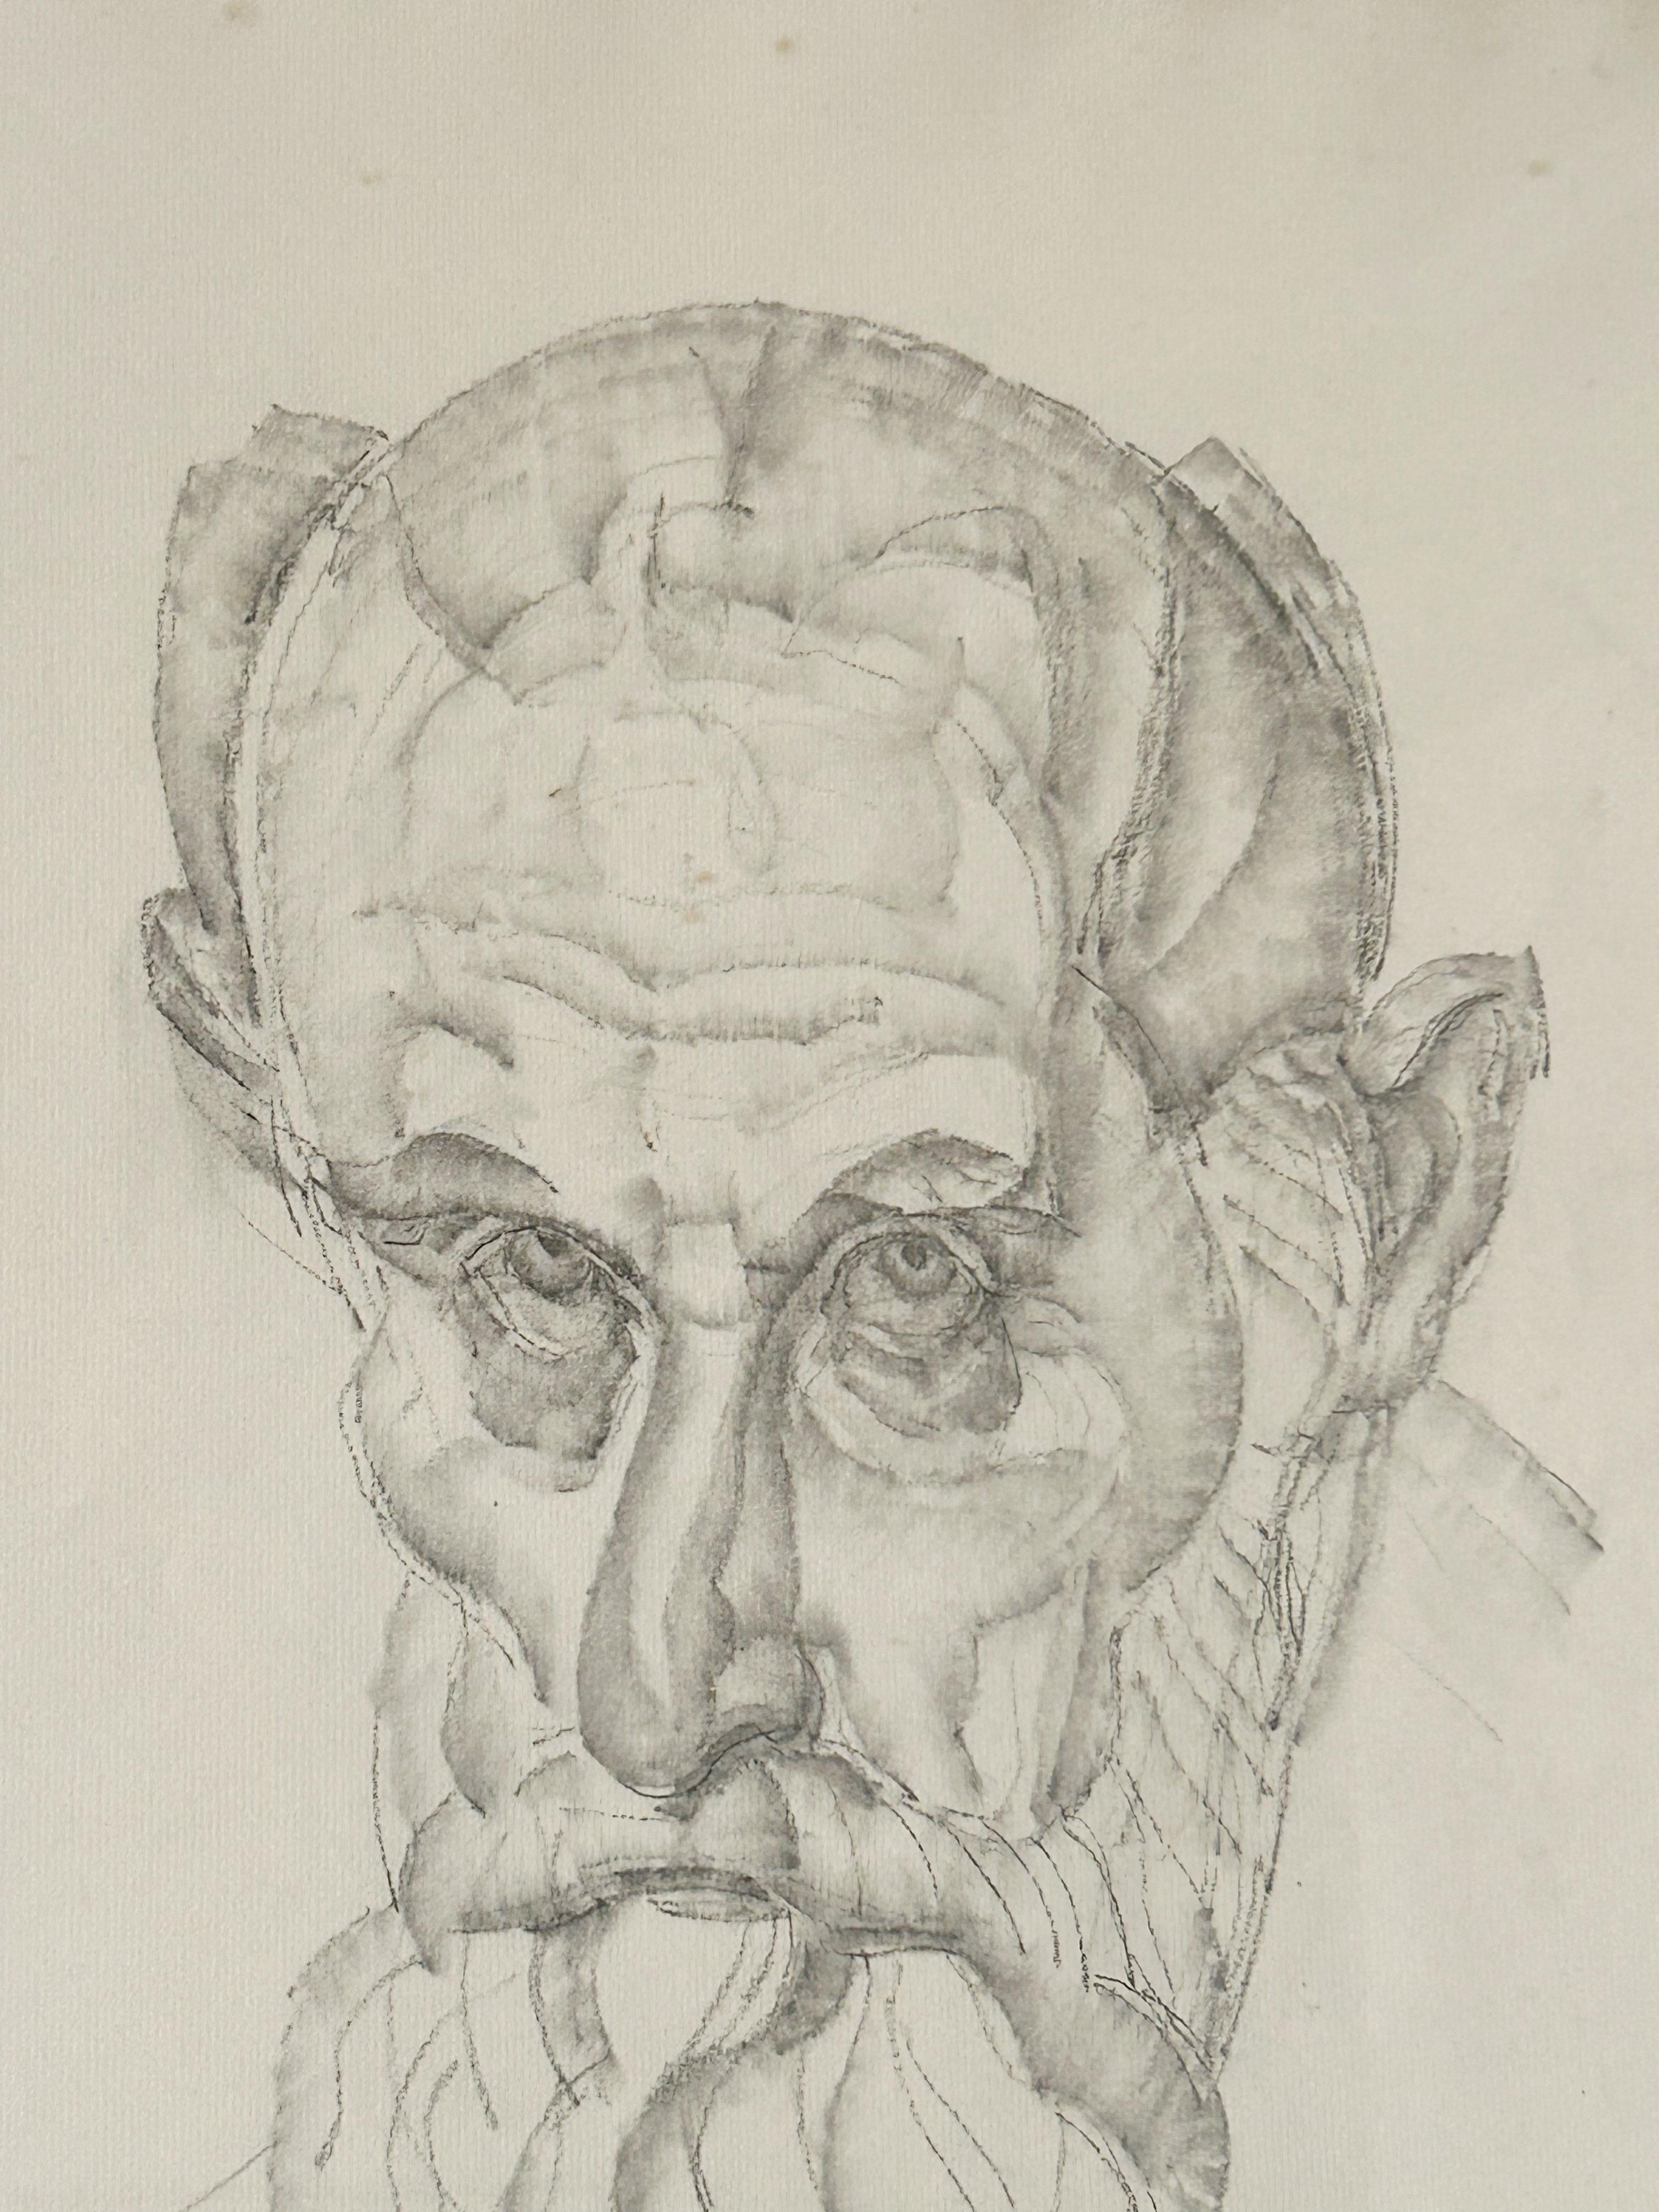 Jules OURY dit MARCEL-LENOIR (1872-1931)

Porträt eines bärtigen Mannes, vermeintliches Self-Portrait
Bleistift und Stumpf auf Papier
Signiert 